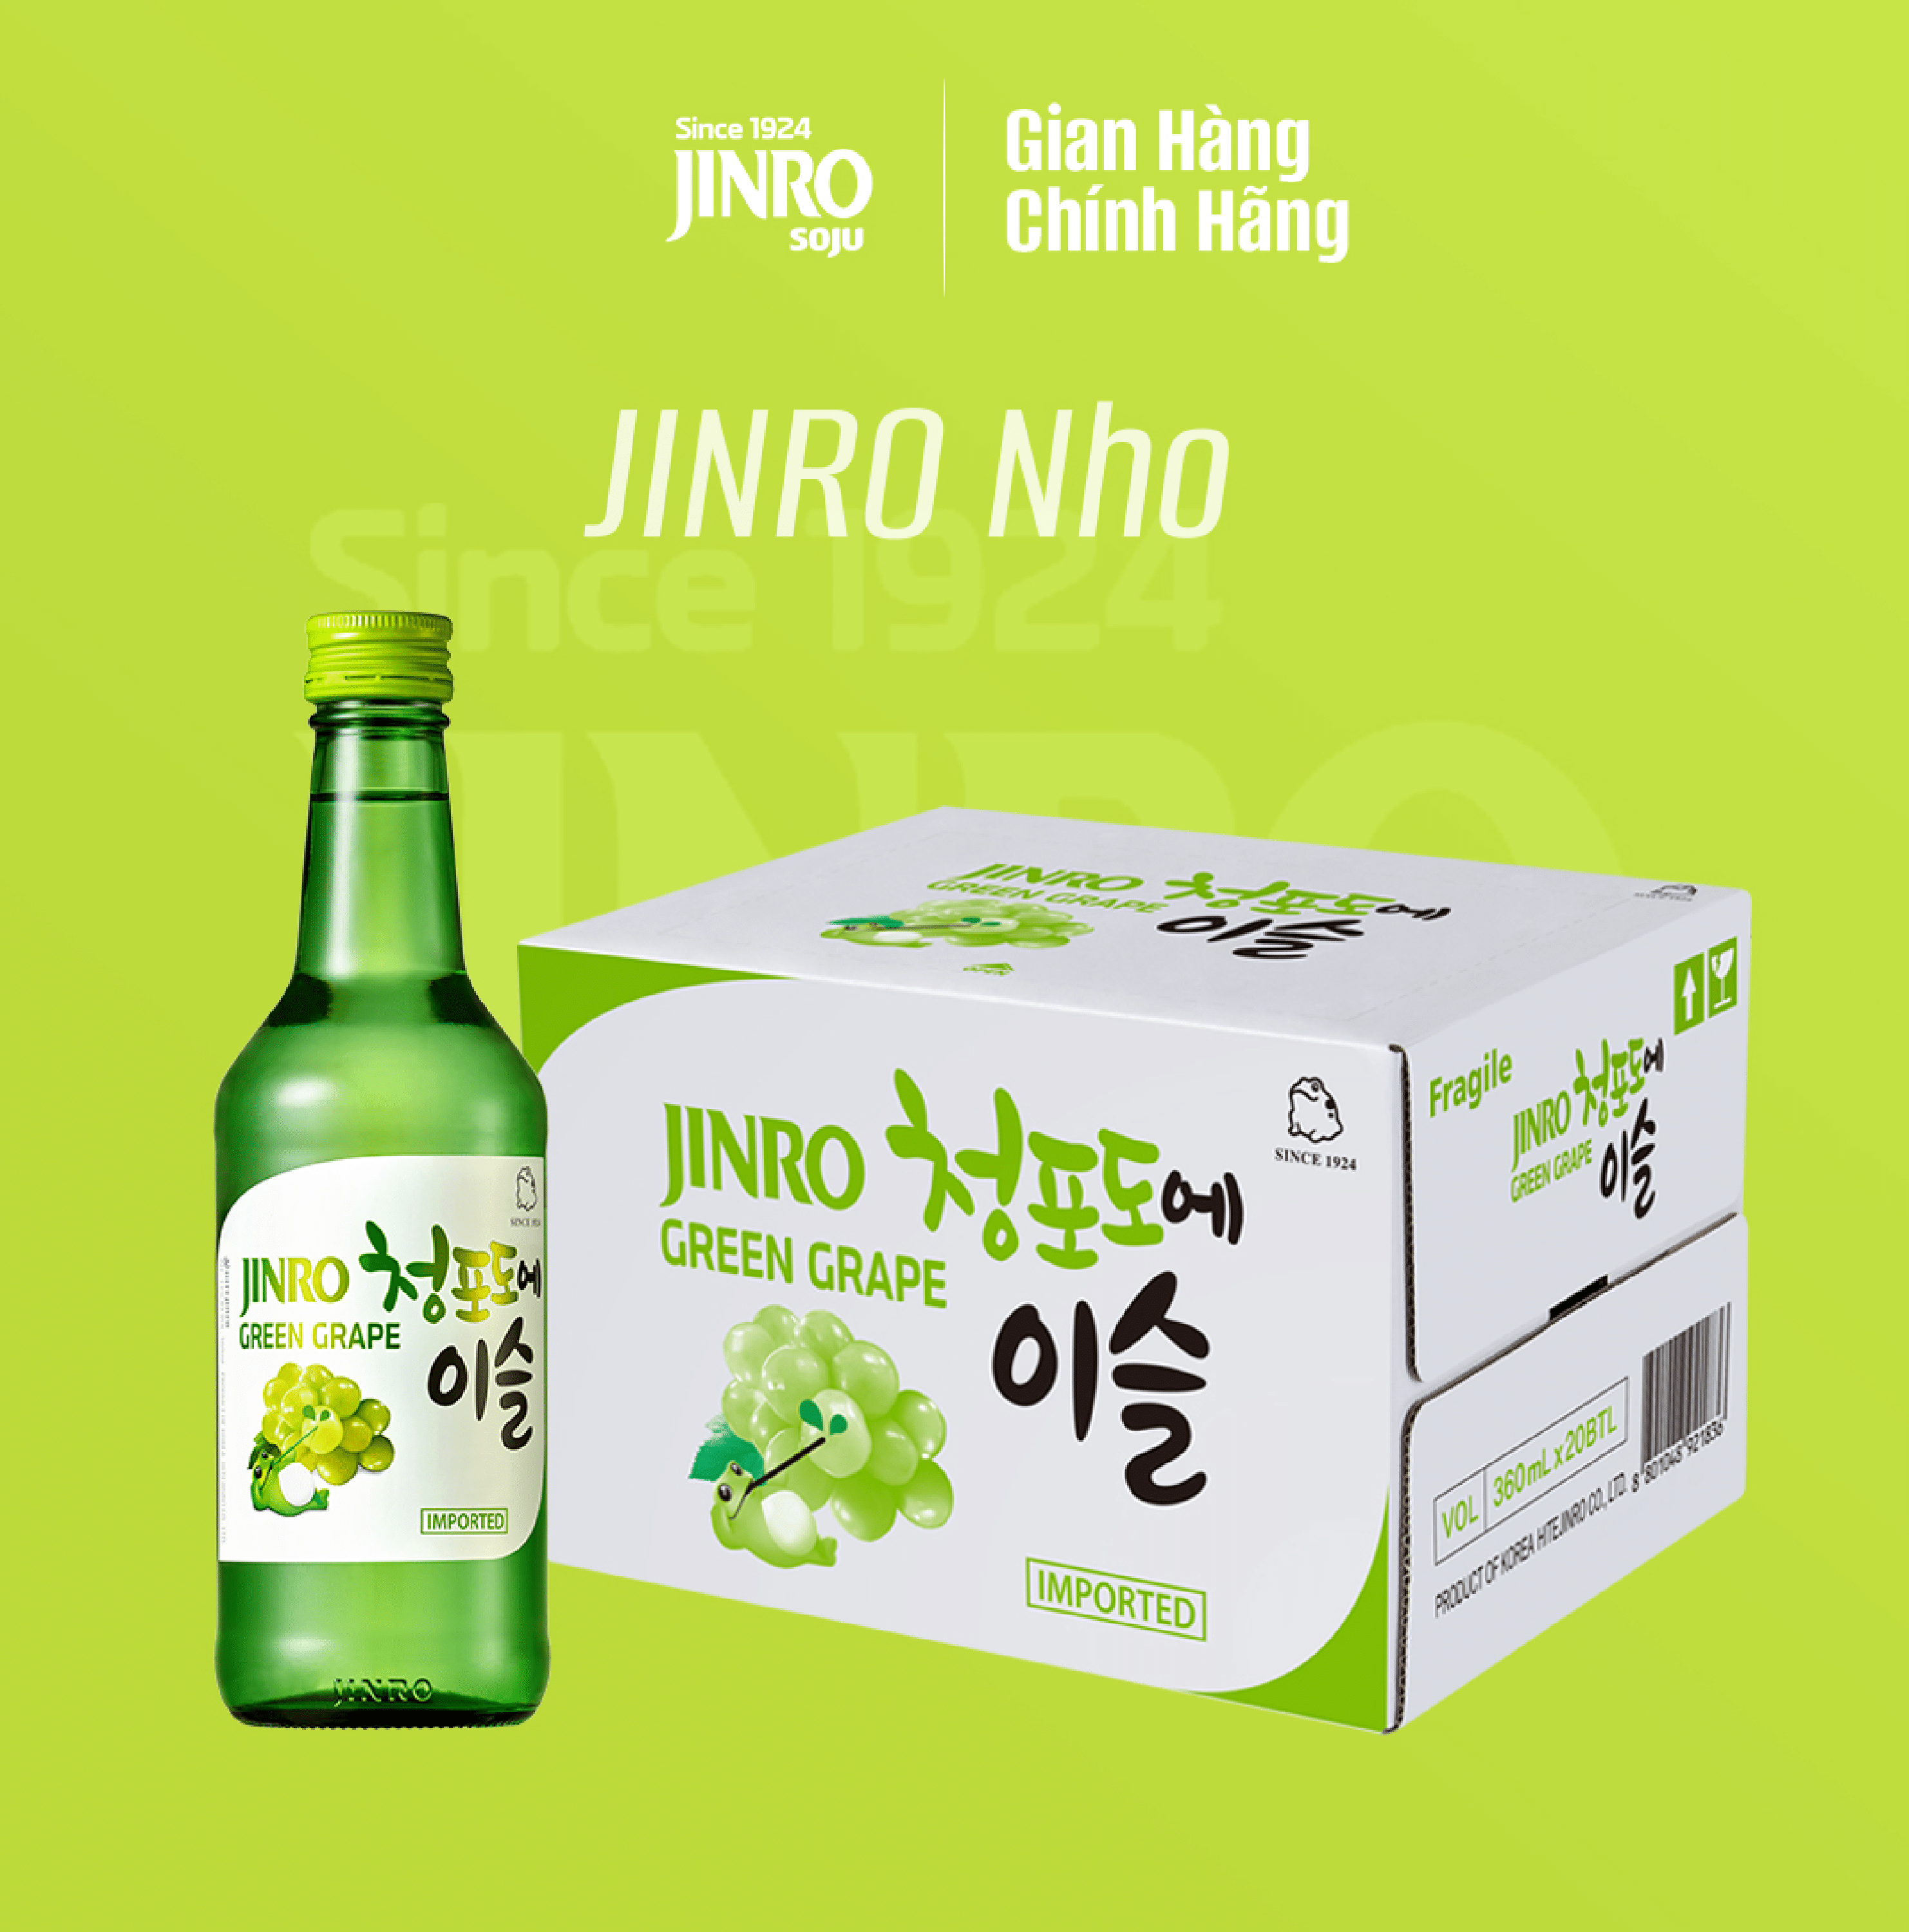 [CHÍNH HÃNG] Soju Hàn Quốc JINRO VỊ NHO 360ml - Thùng 20 chai